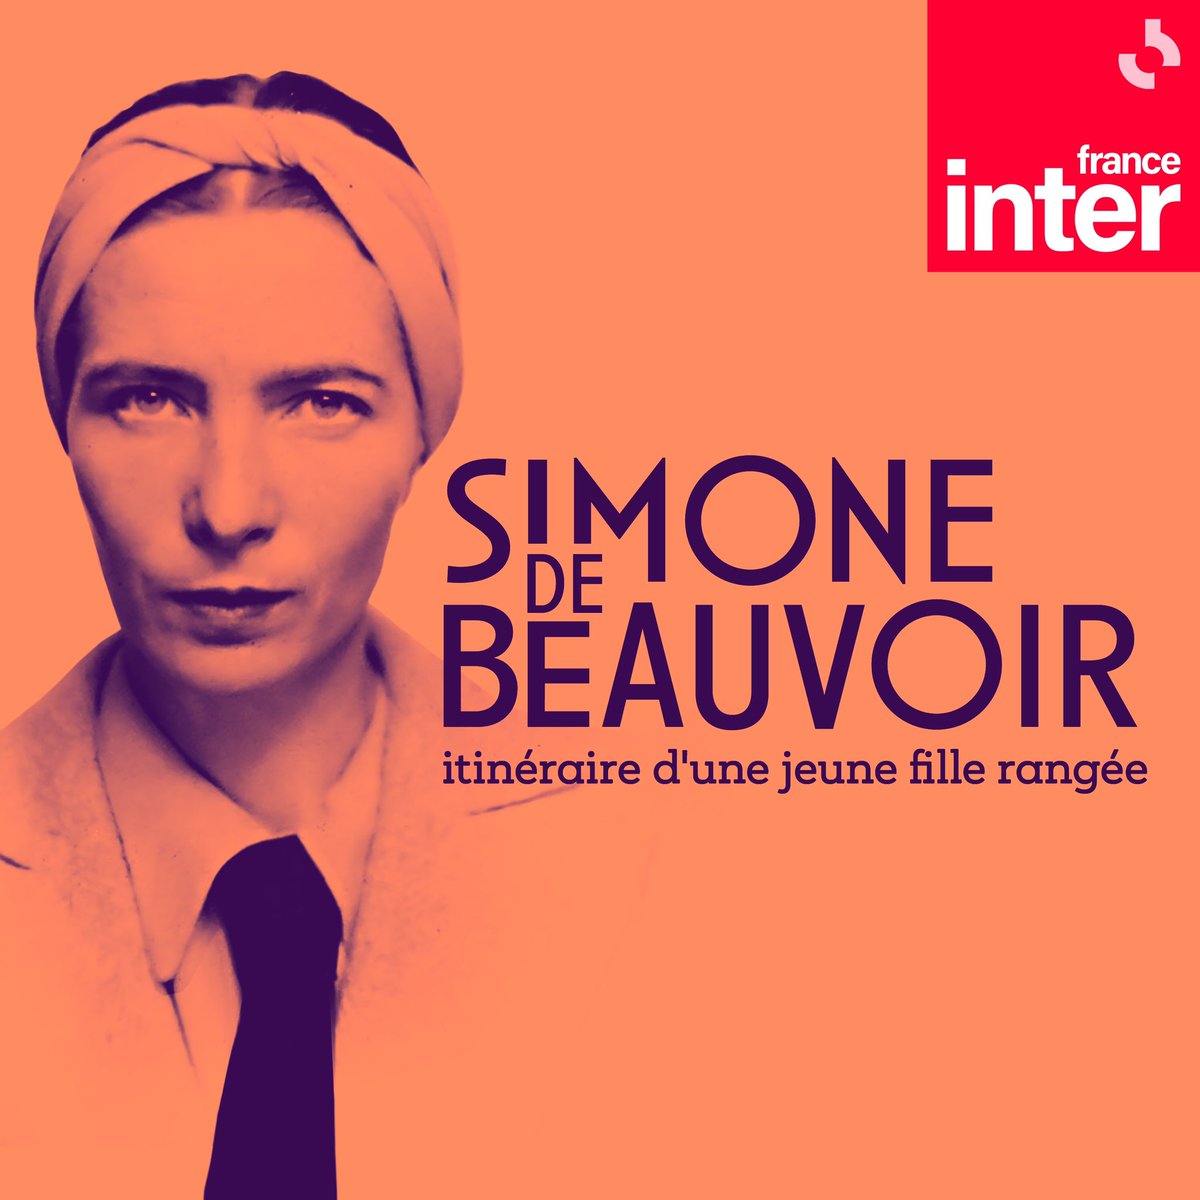 Simone de Beauvoir, c'est la nouvelle série de podcasts signée @Philco750062 et disponible sur les applis @franceinter et @radiofrance et vos plateformes habituelles